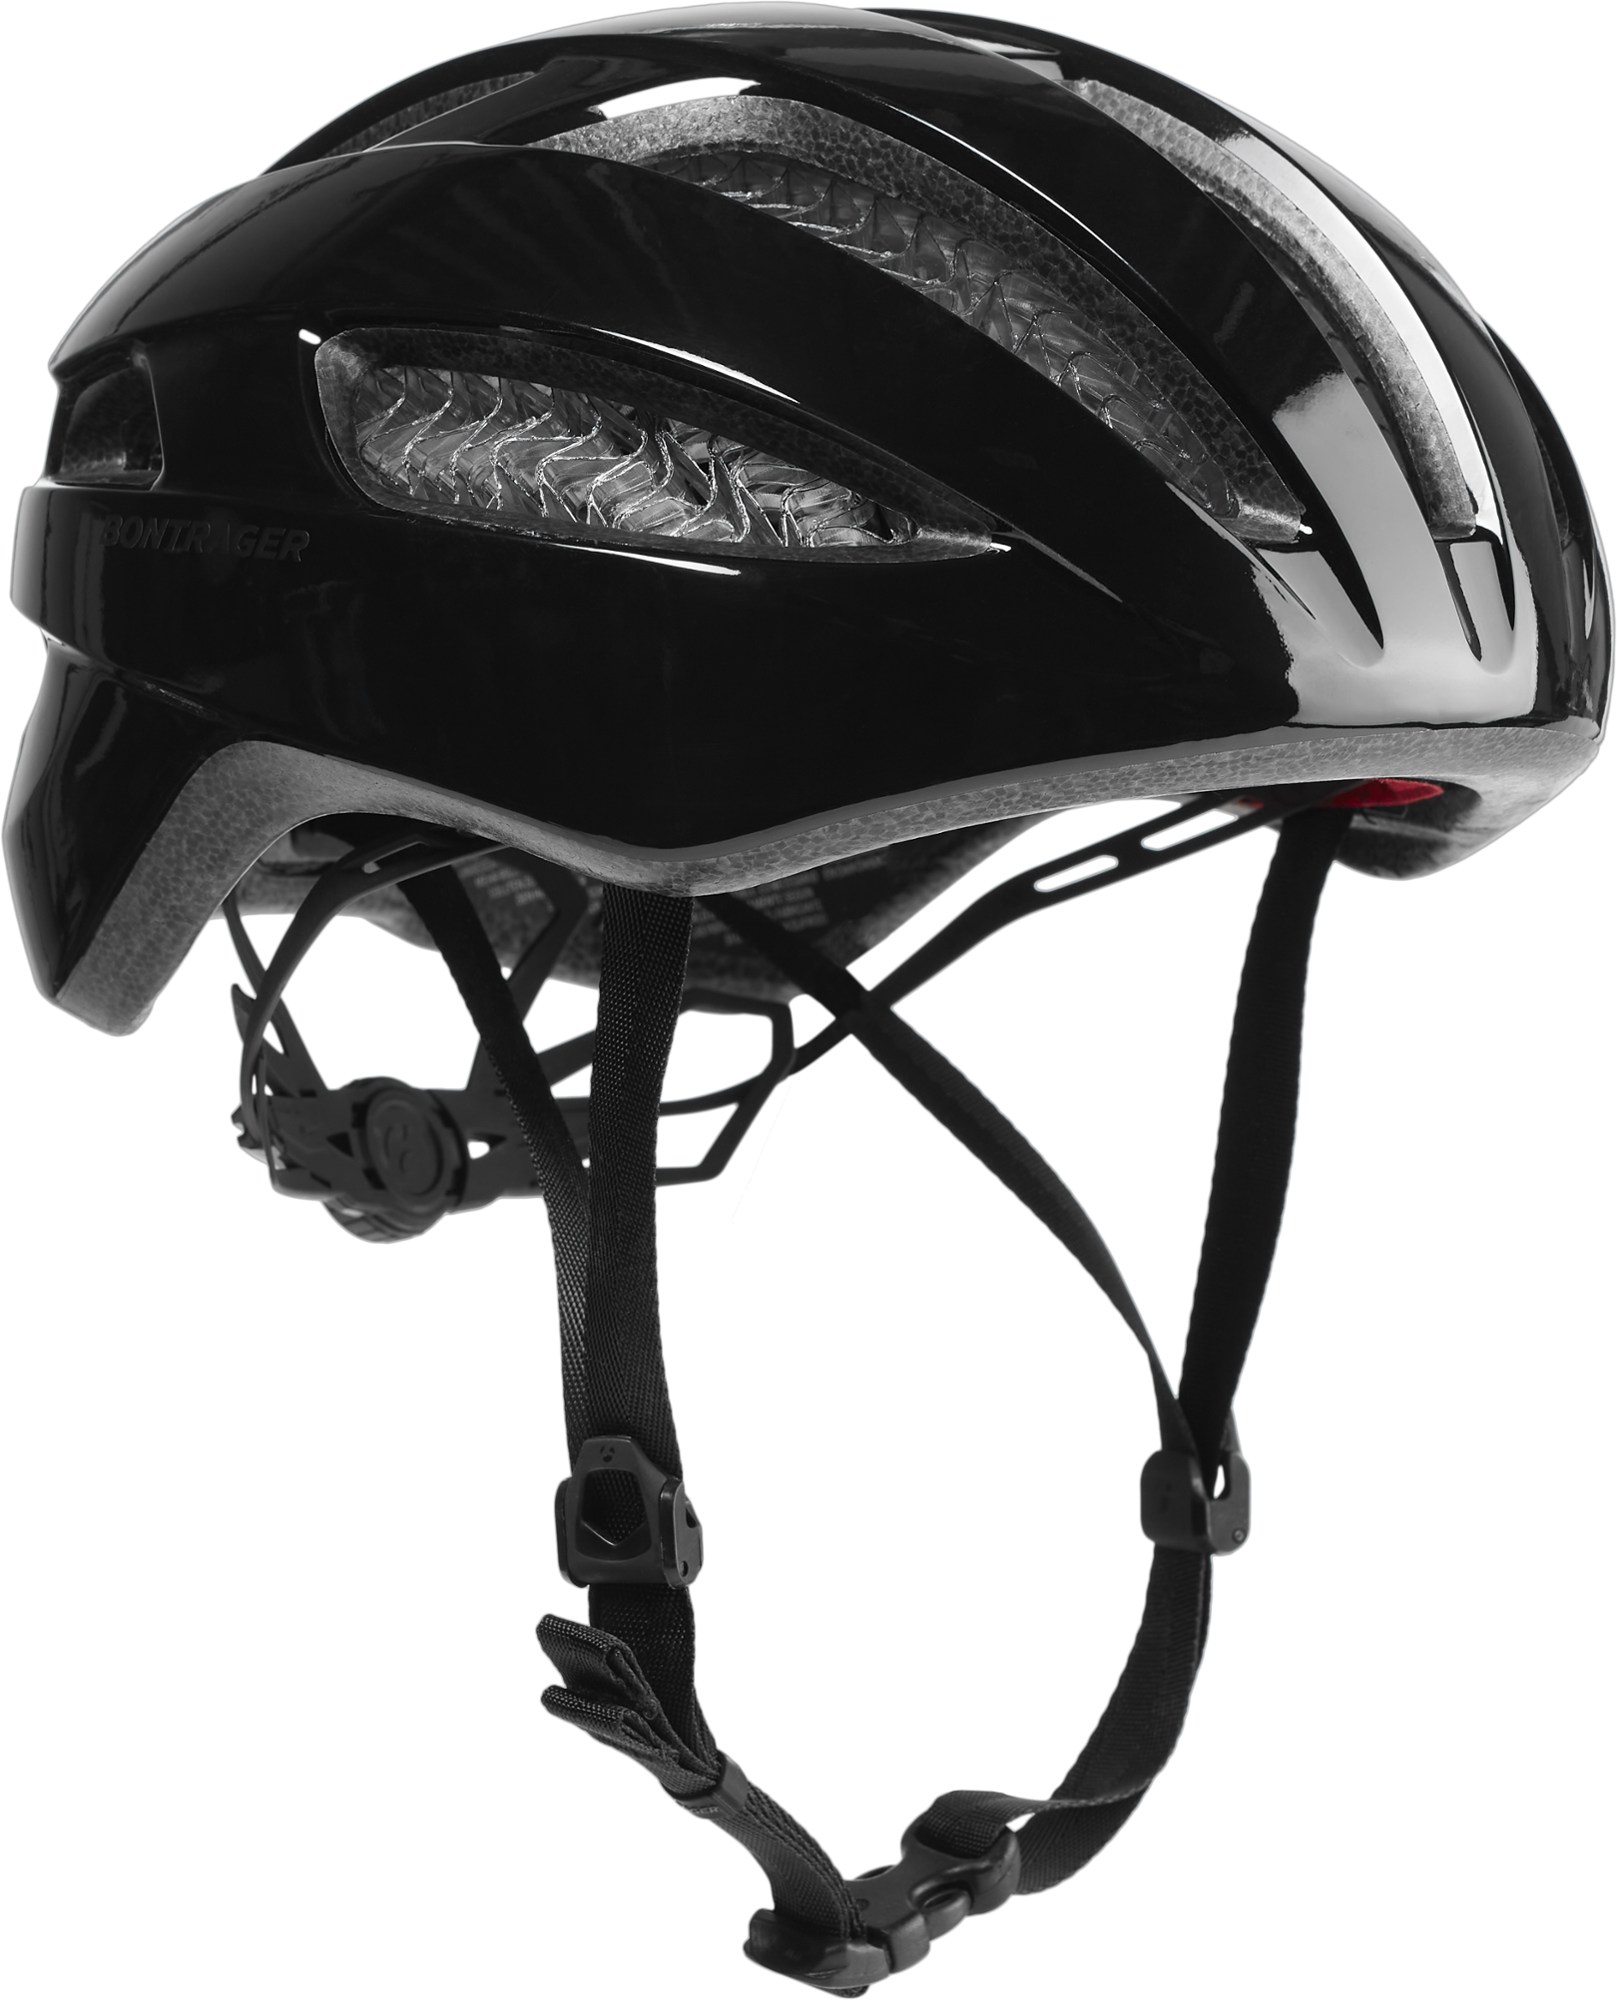 Круглый велосипедный шлем Starvos WaveCel Bontrager, черный